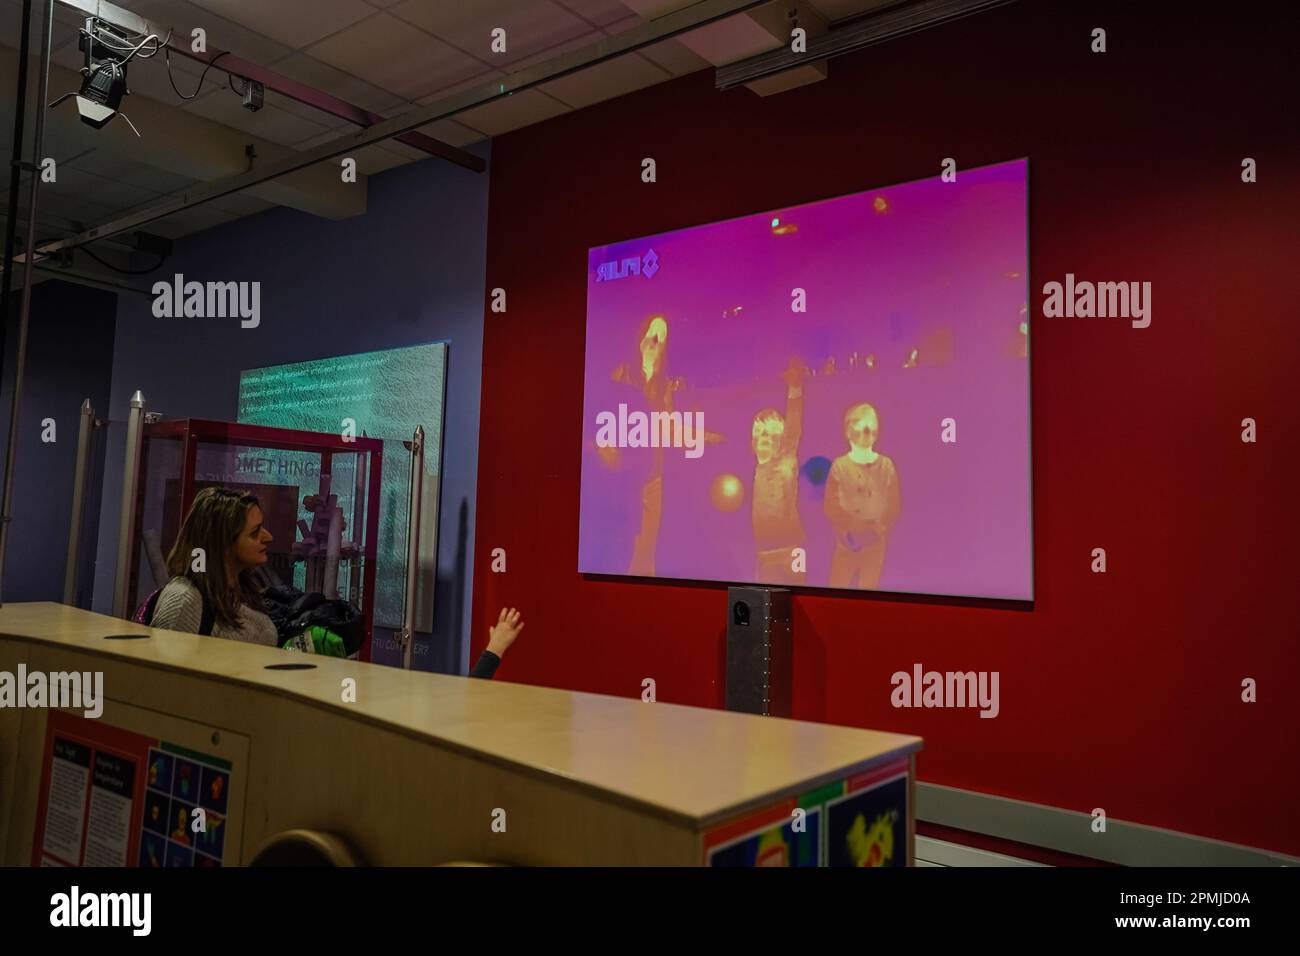 Wärmebildkarte der Infrarotkamera, die auf den Bildschirm projiziert wird und die Körpertemperatur der Personen anzeigt, die vor dem Bildschirm stehen Stockfoto